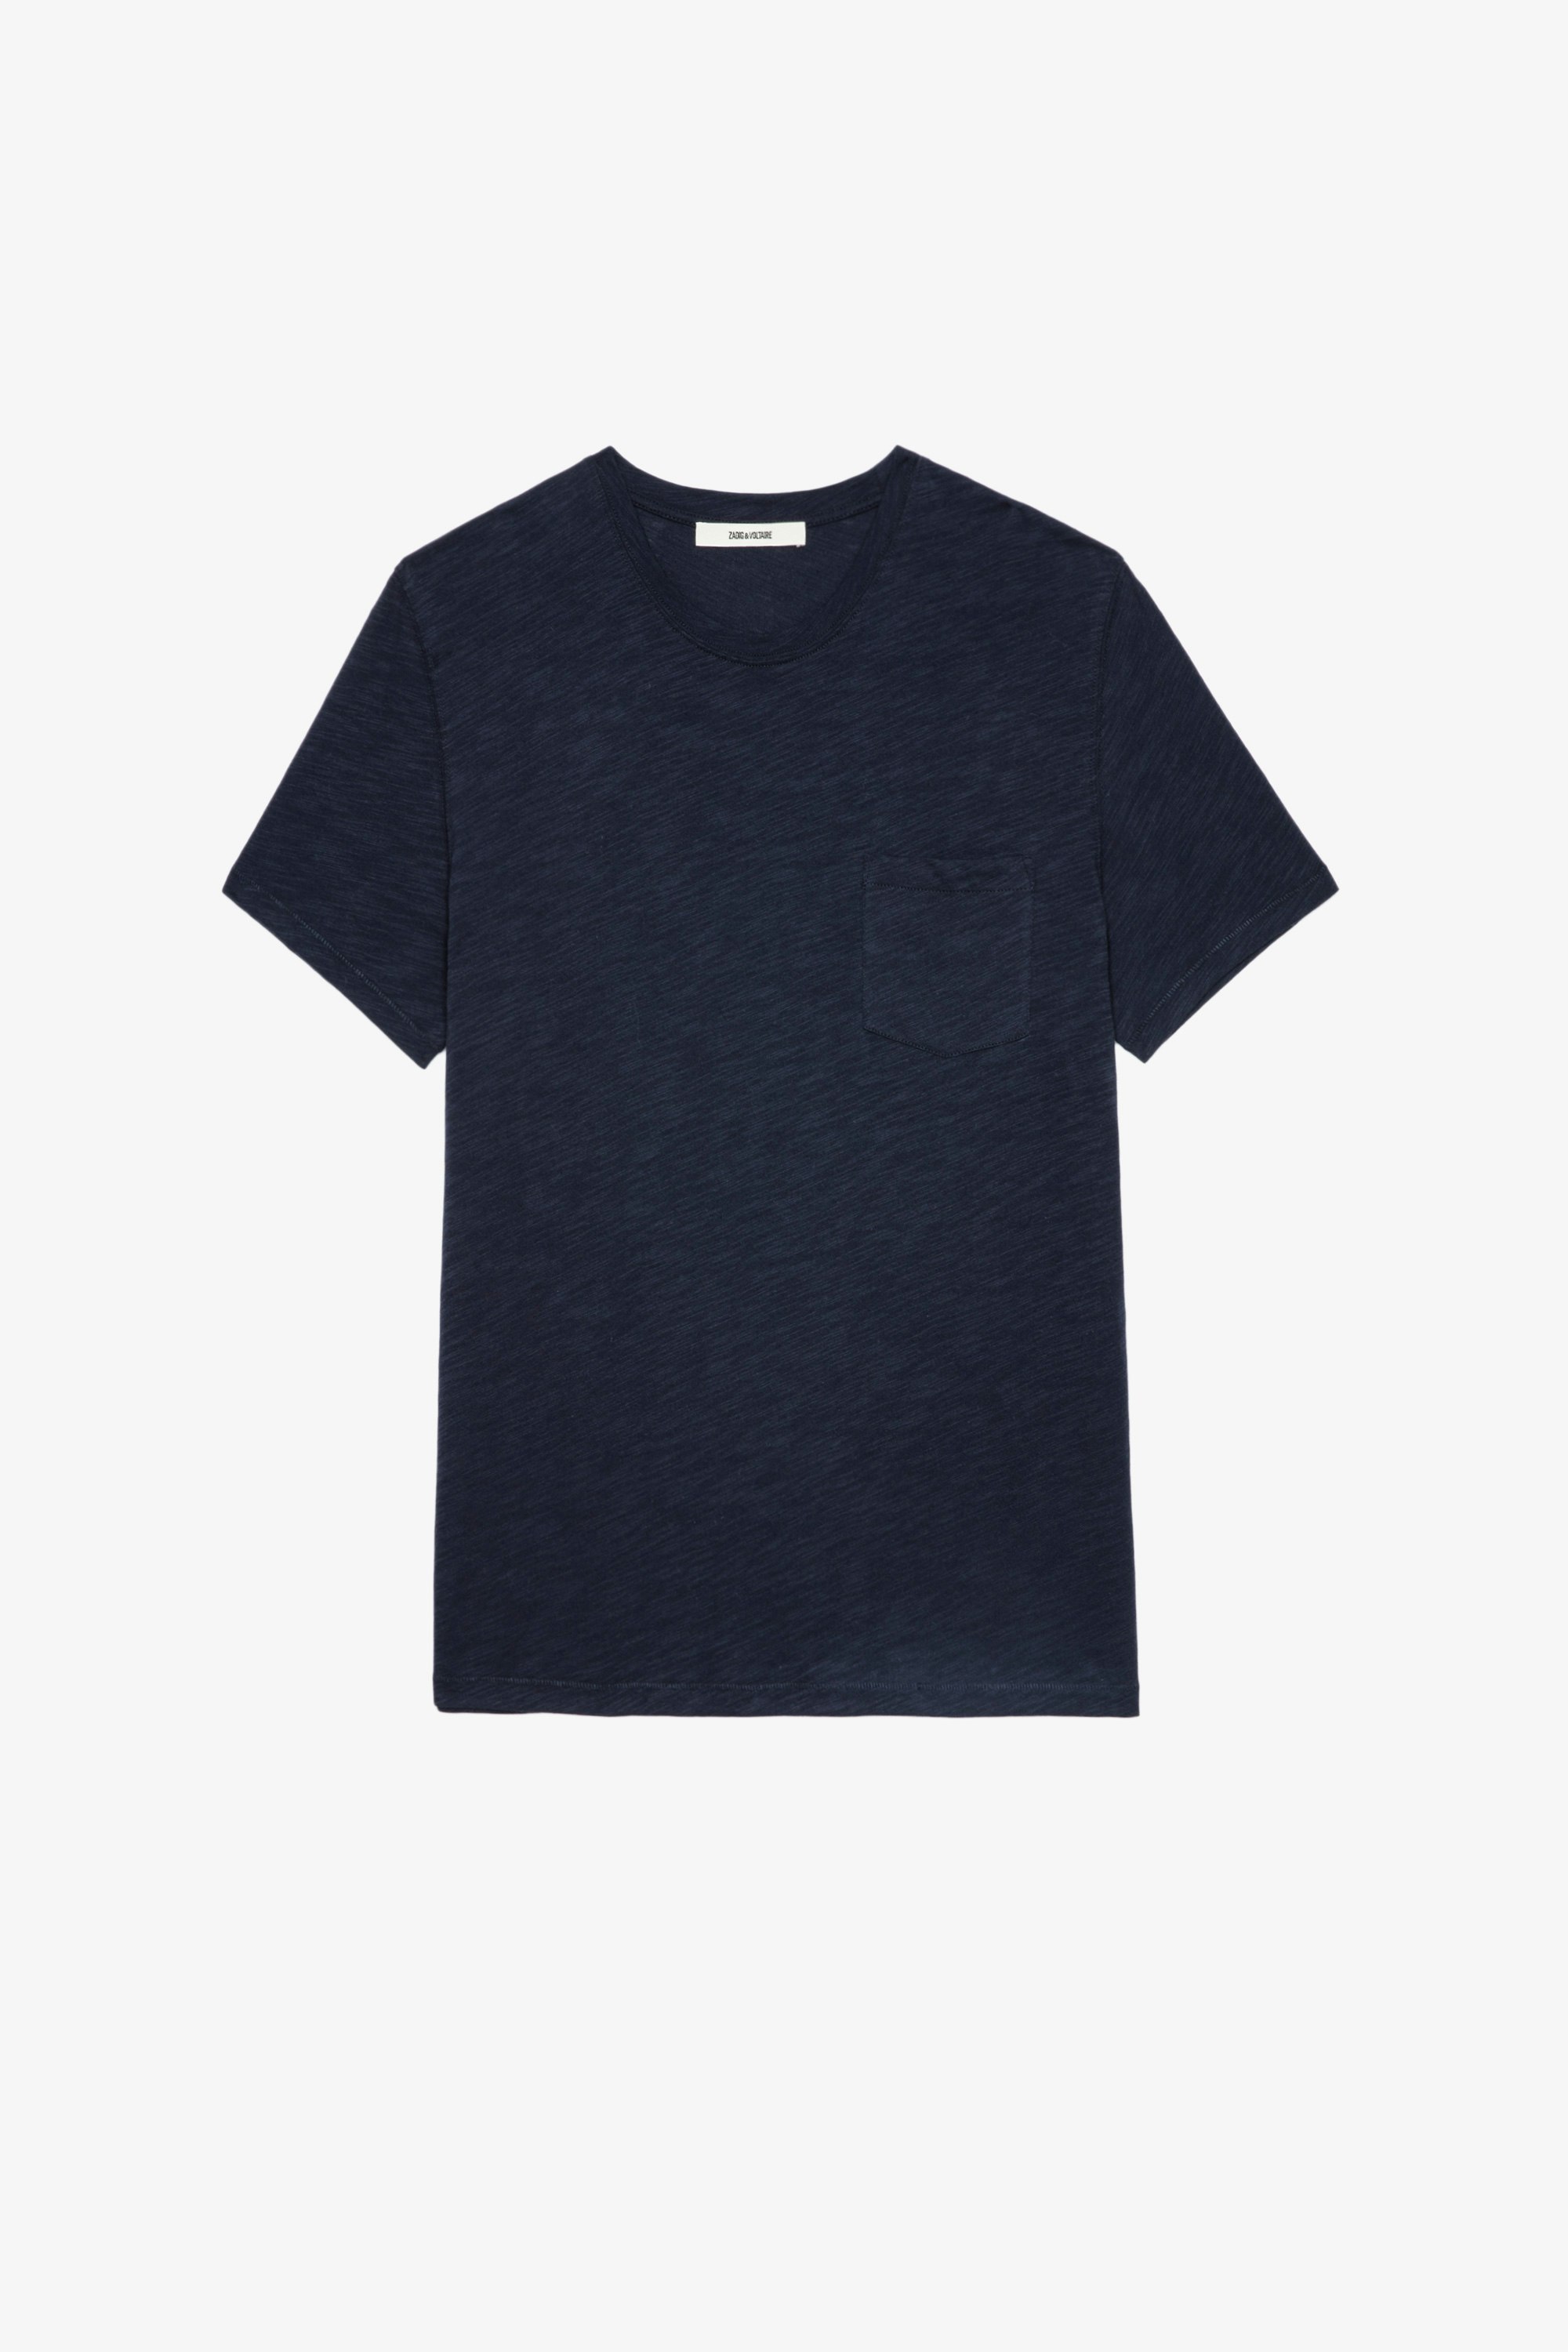 Camiseta Stockholm jaspeada Camiseta azul marino de algodón jaspeado para hombre con bolsillo de parche y calavera flocada en la espalda